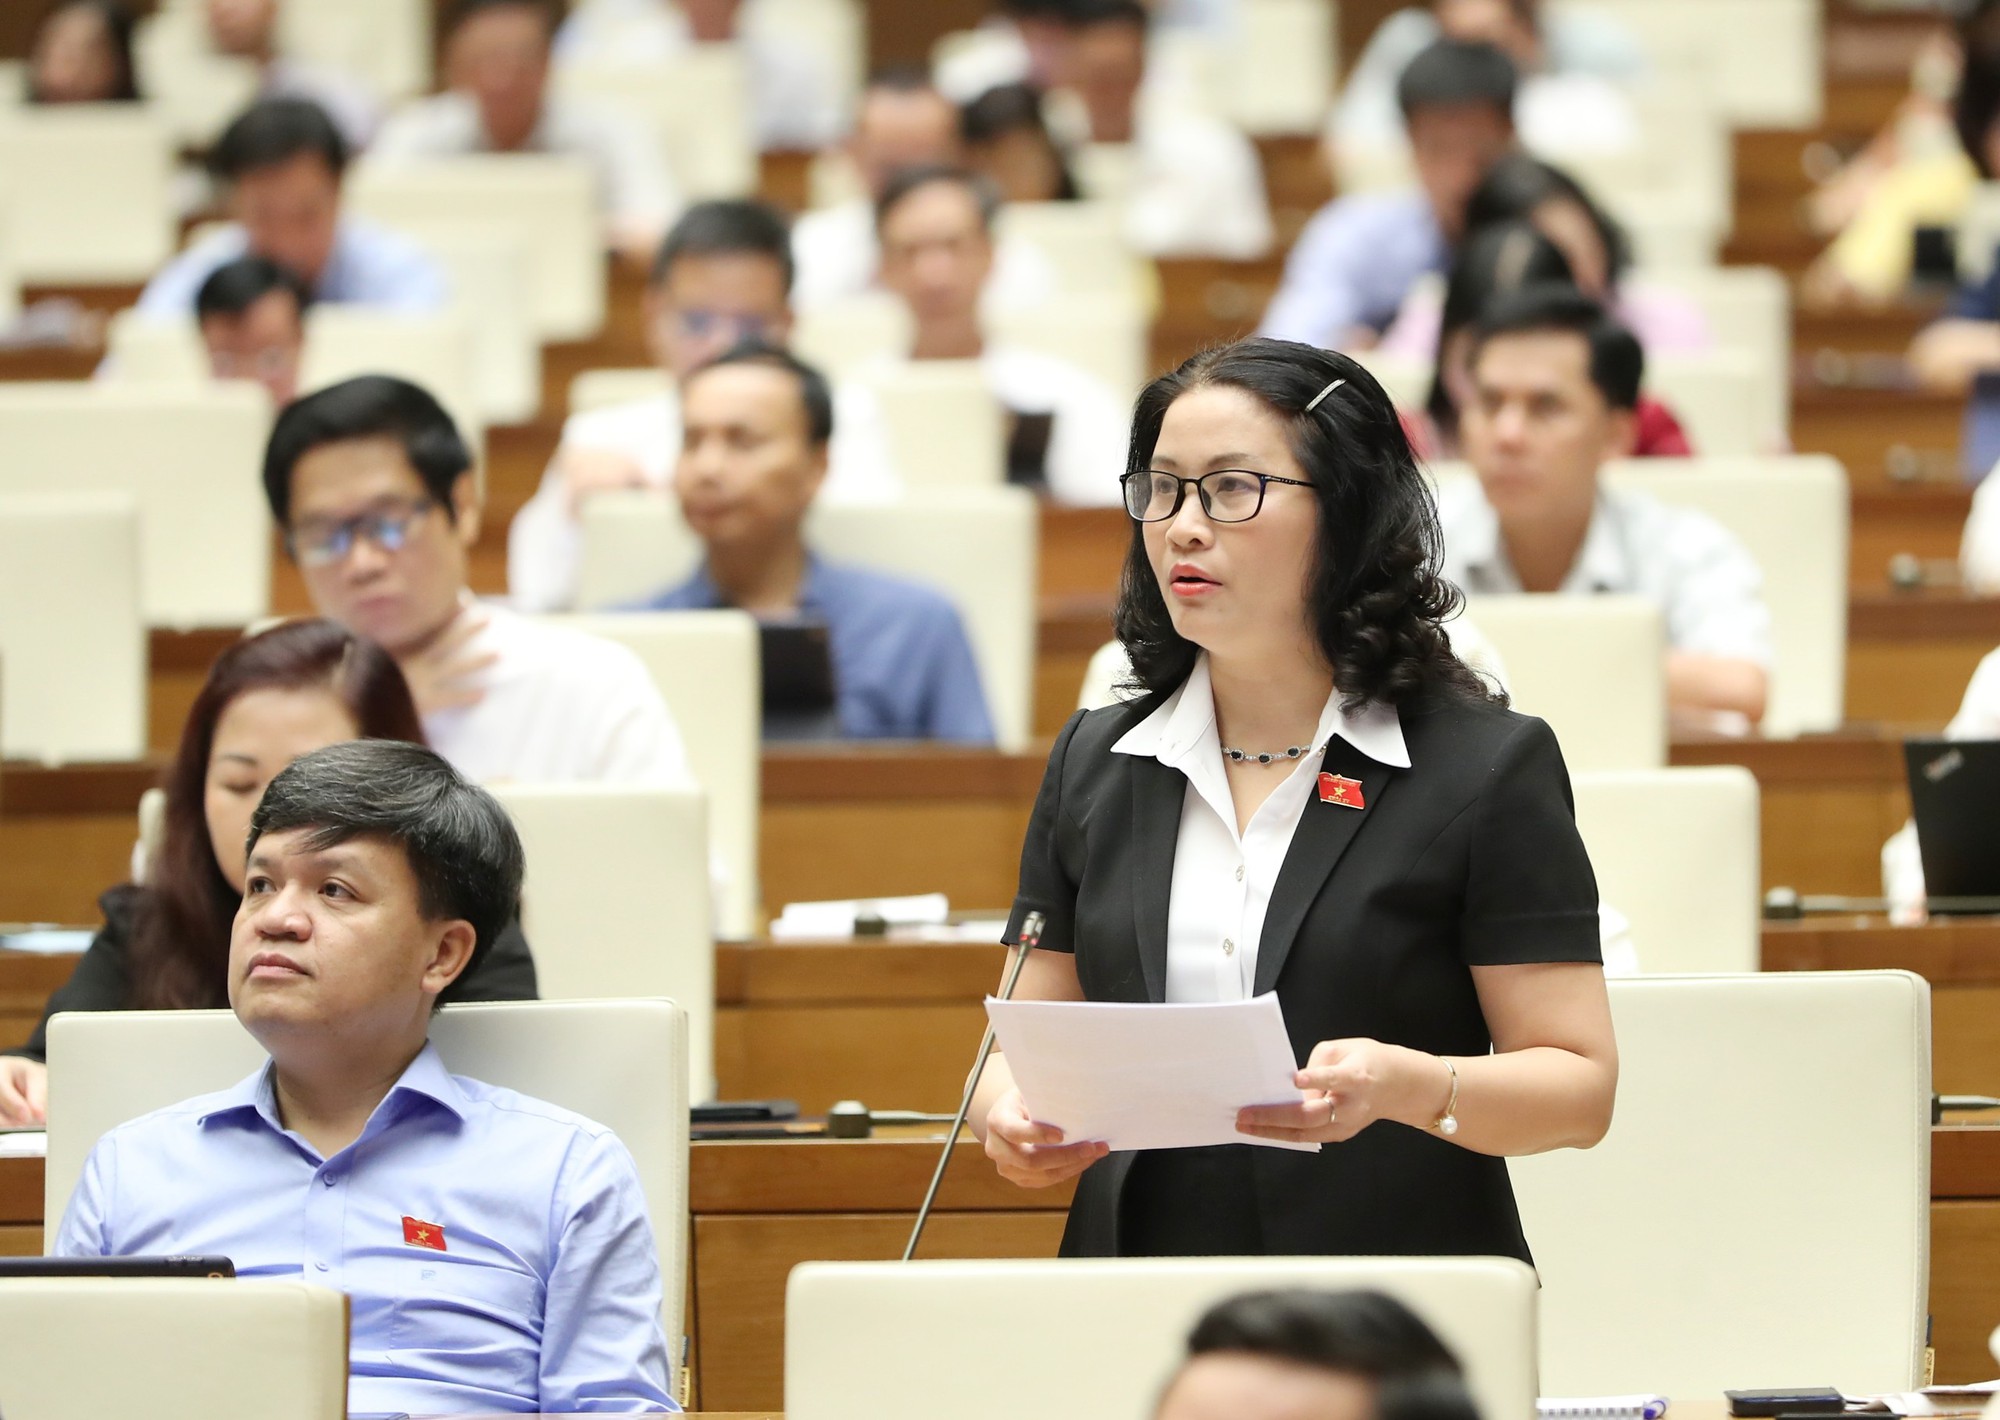 Giám đốc Học viện Nông nghiệp Việt Nam đề nghị phân cấp cho tỉnh tự quyết chuyển đổi cơ cấu nội bộ đất nông nghiệp - Ảnh 1.